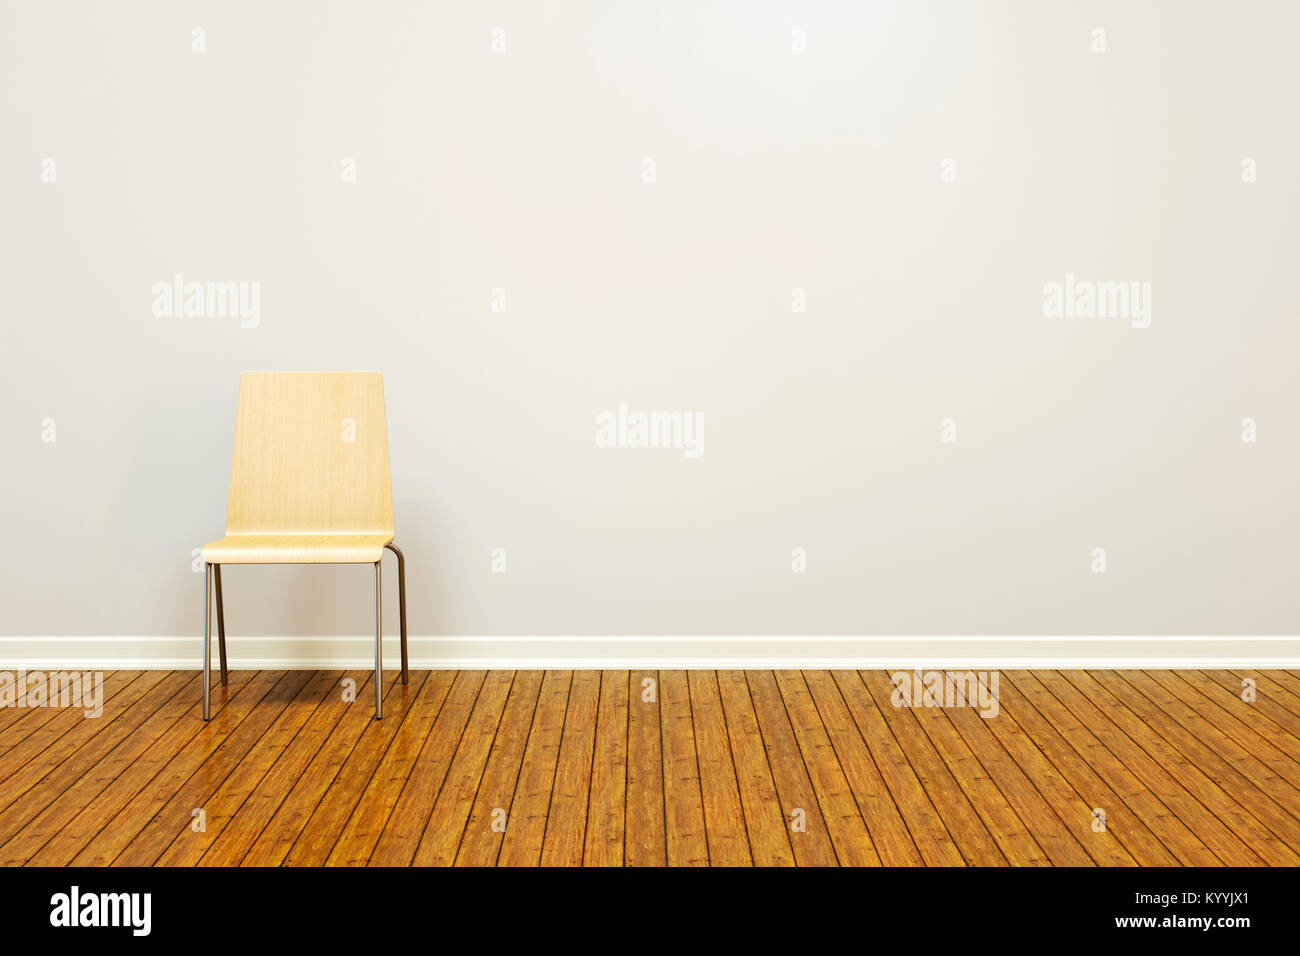 Grand mur vide dans une salle vide avec un plancher en bois et président de base Banque D'Images